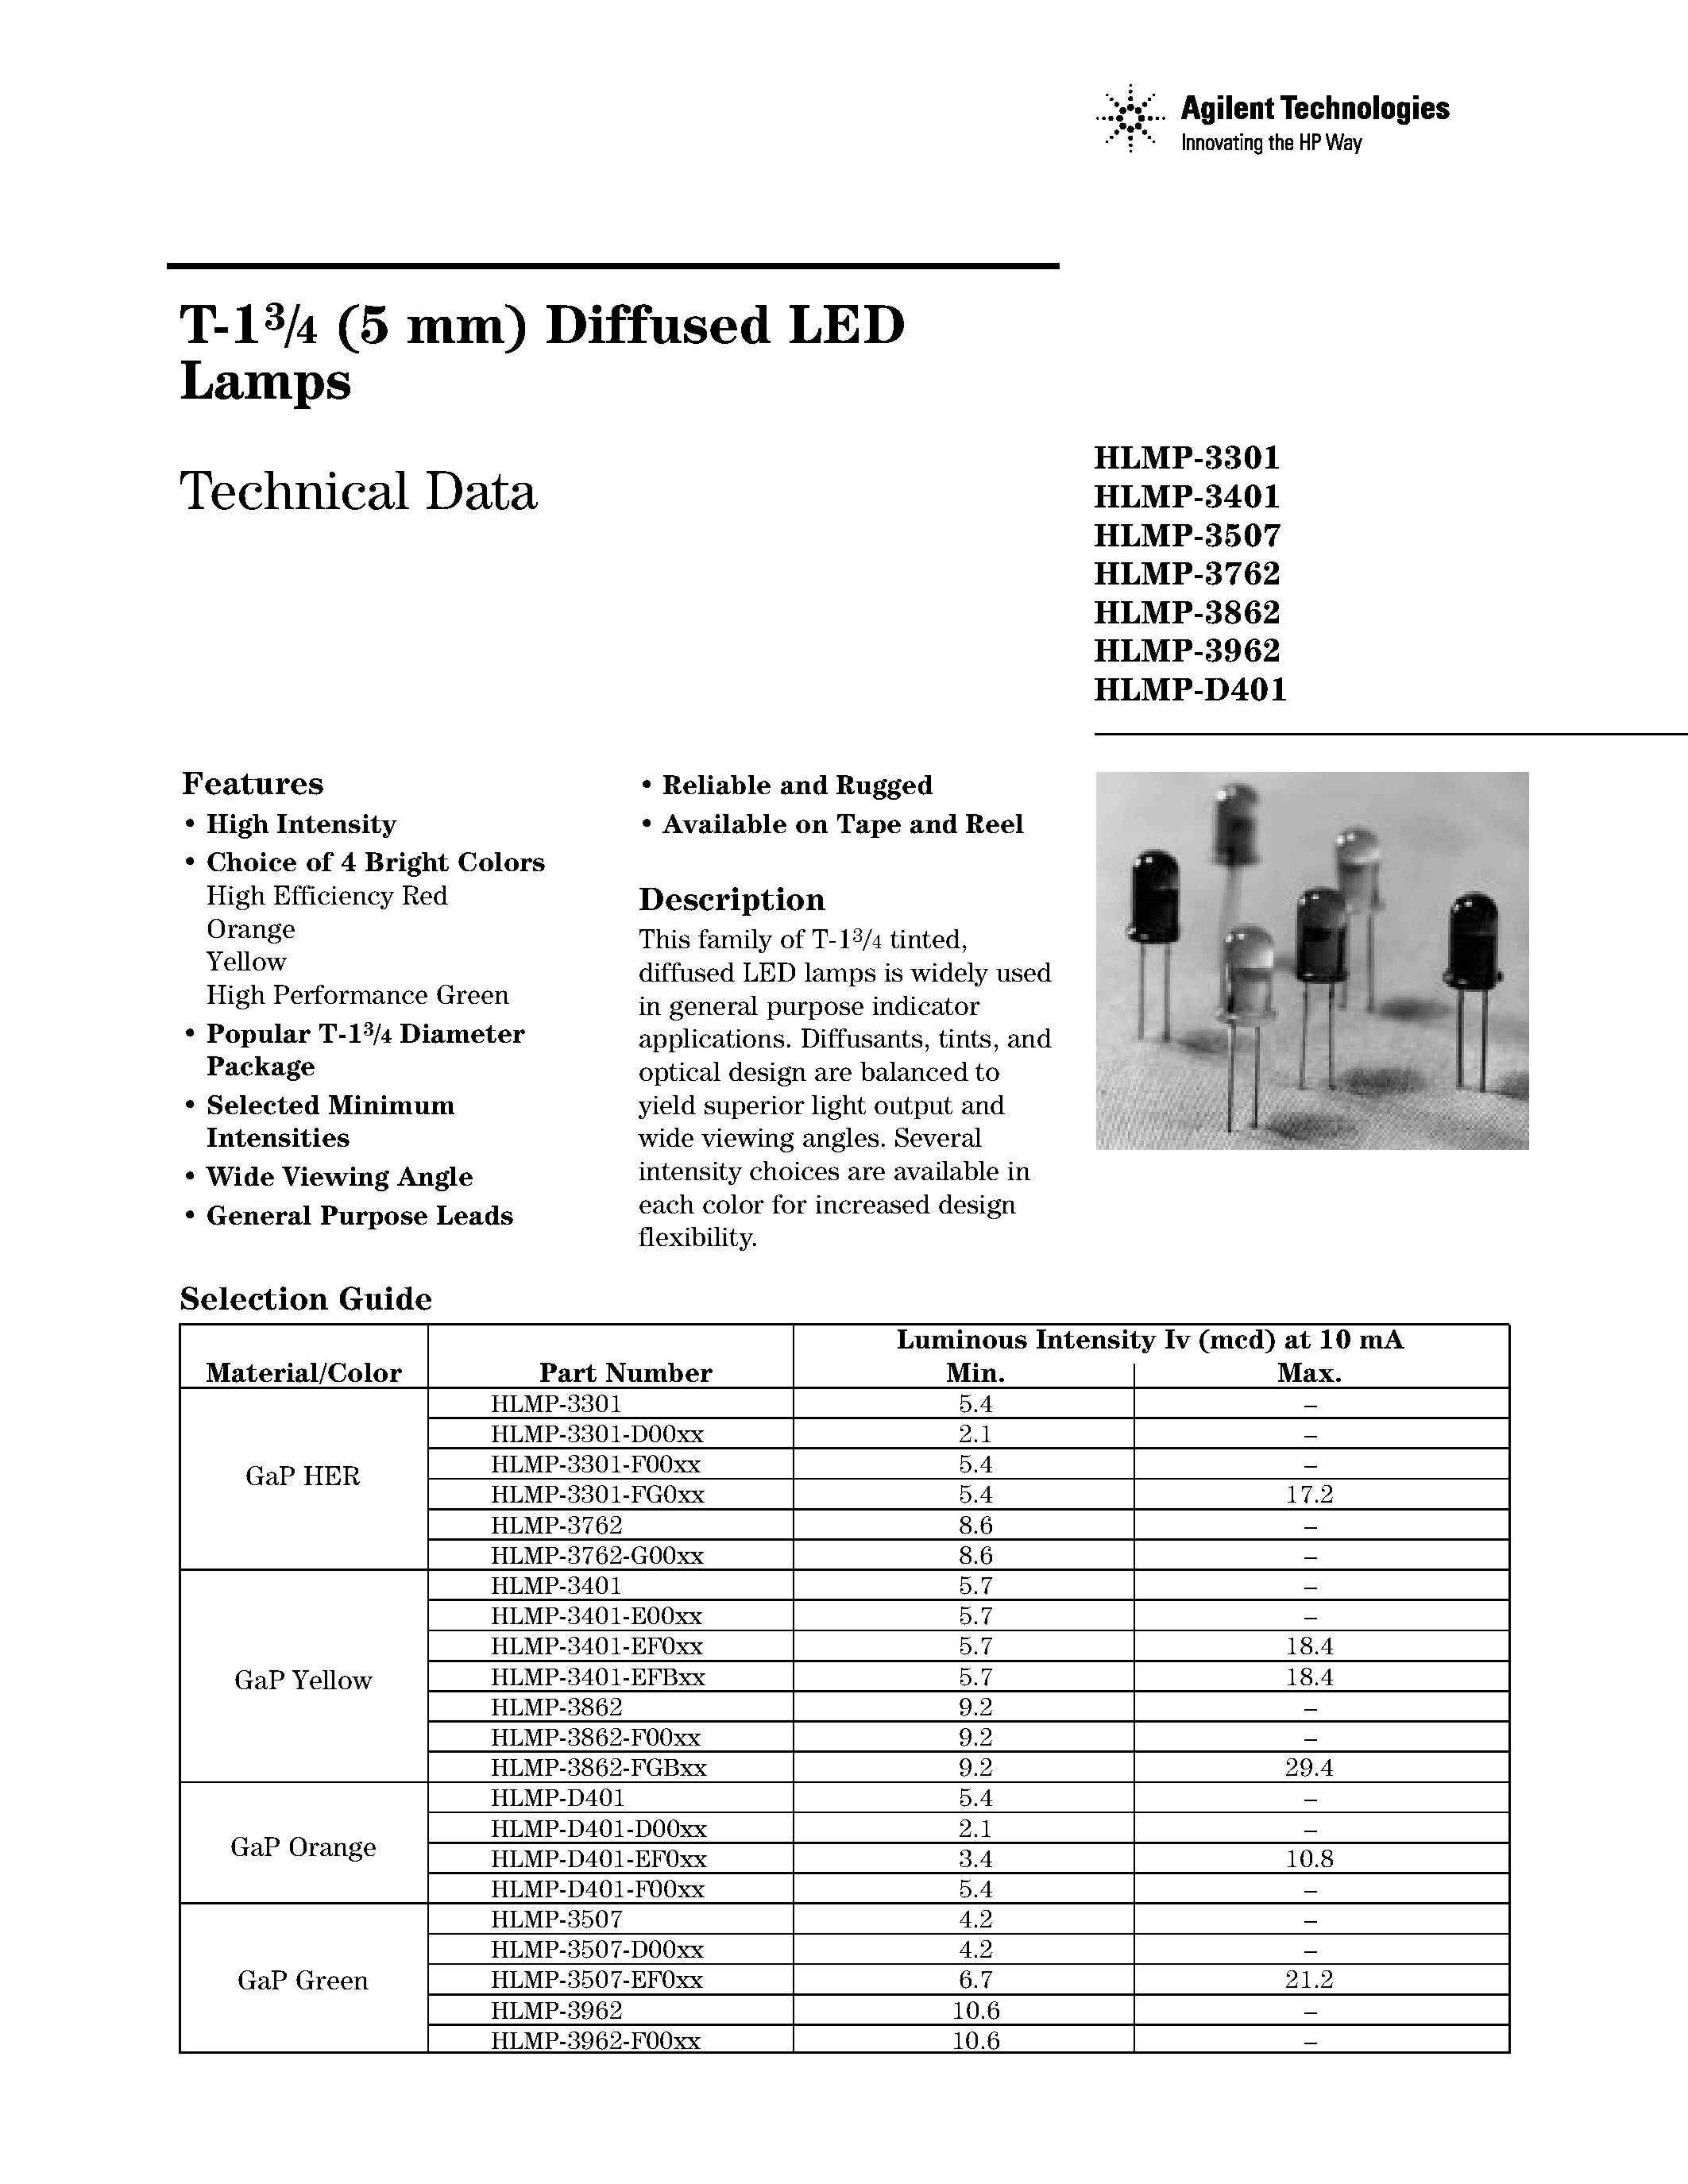 Даташит HLMP-3301 - (HLMP-3xxx) T-1 3/4 (5 mm) Diffused LED Lamps страница 1